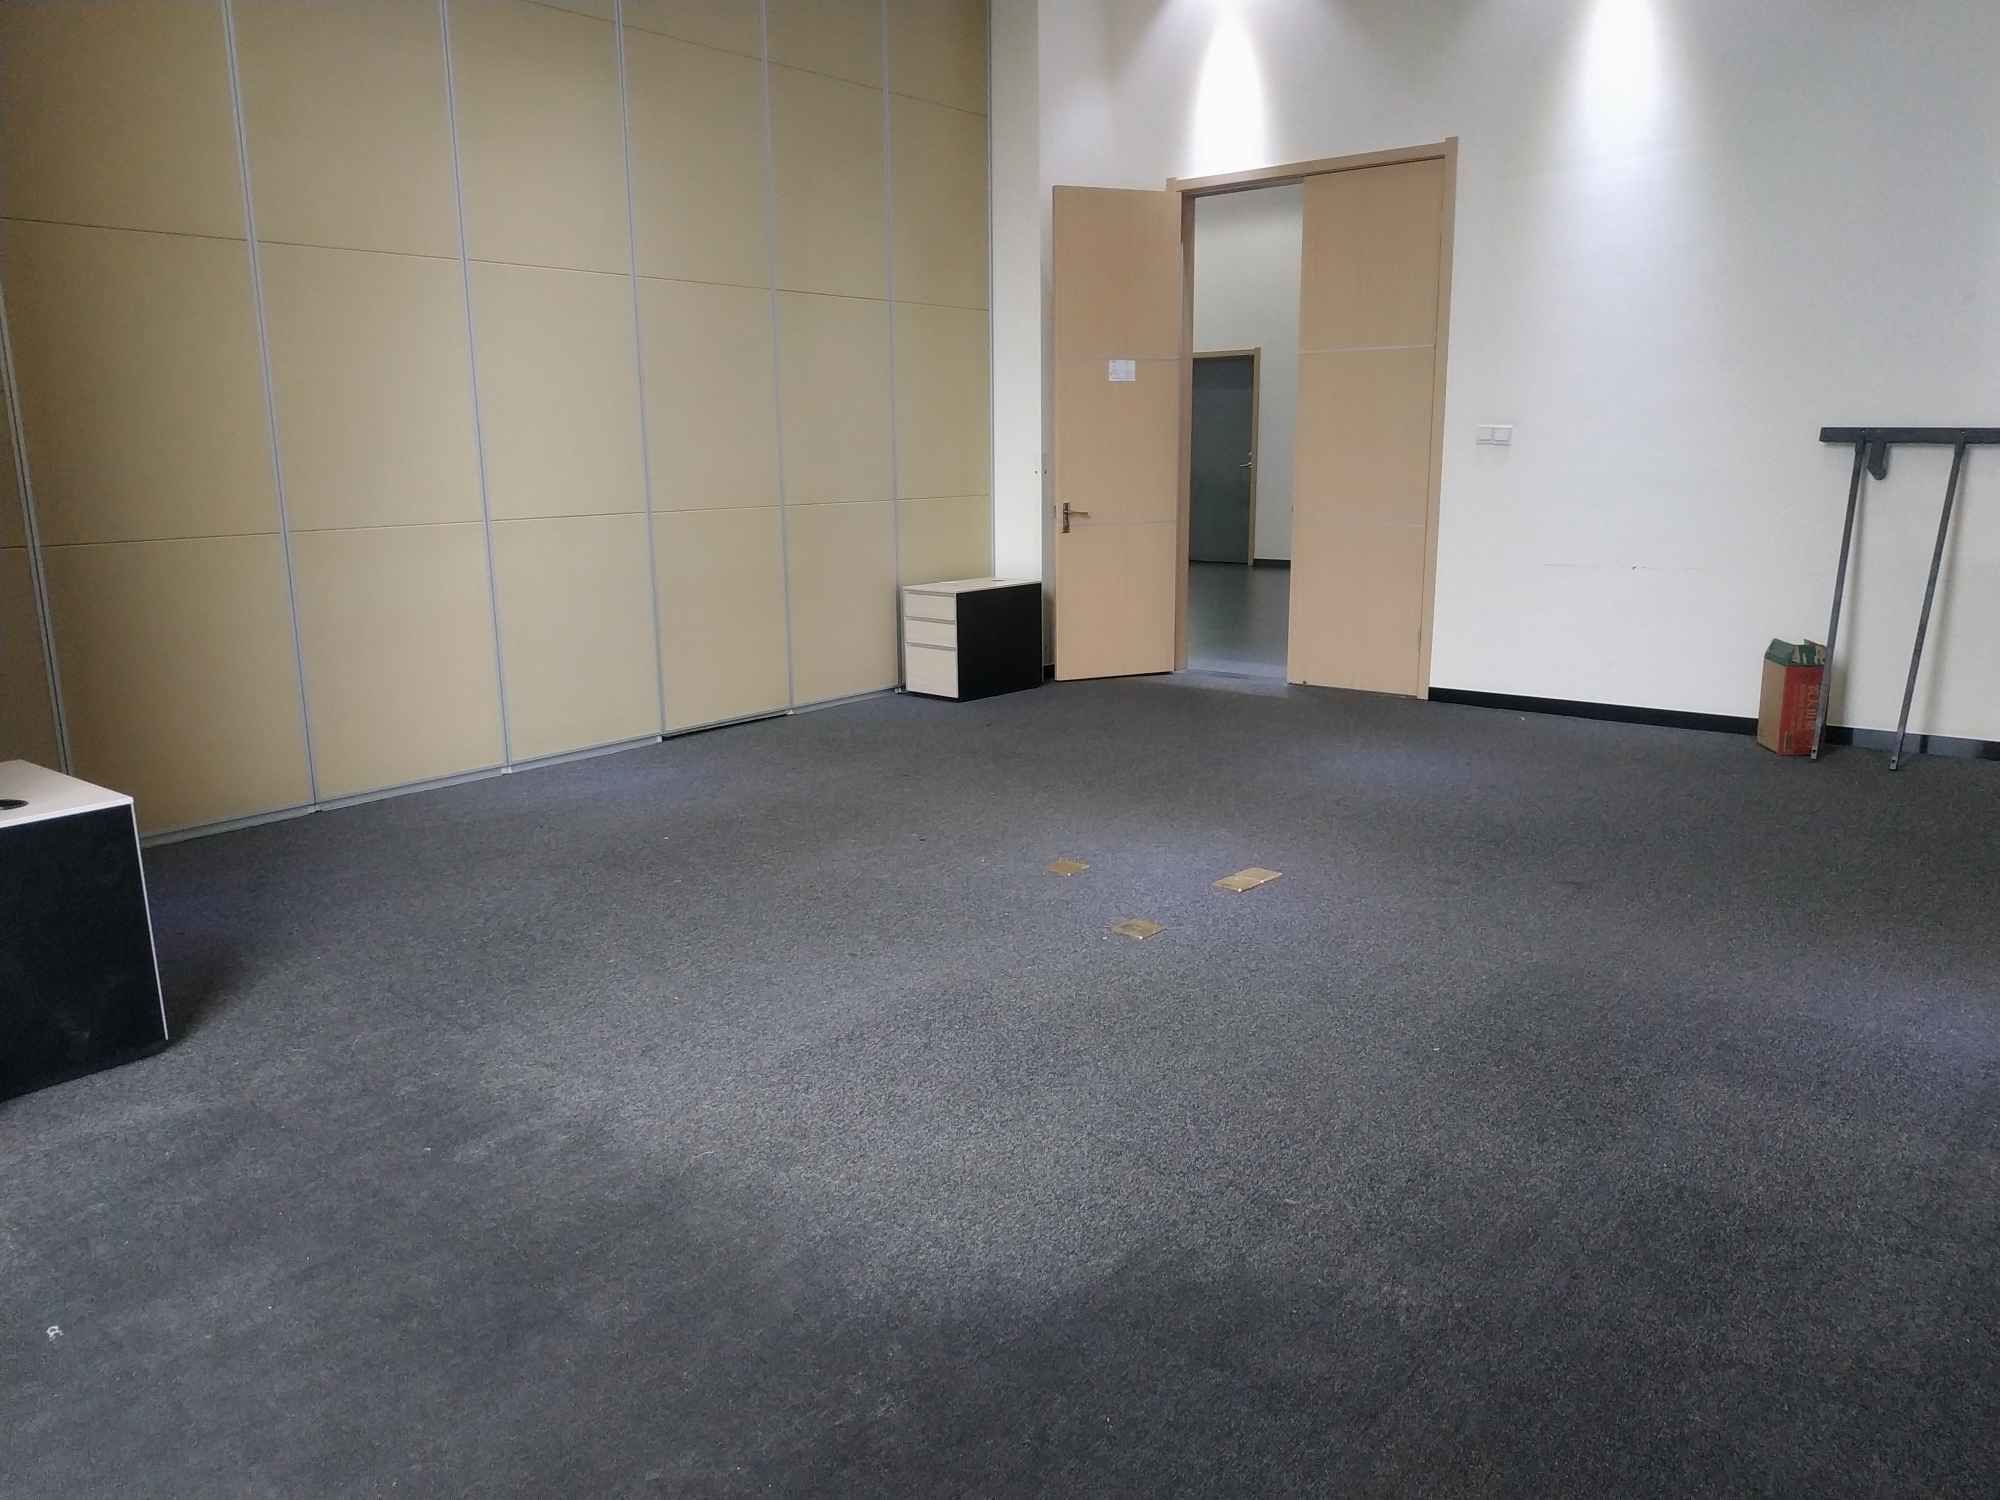 零号湾全球创新创业集聚区139平米办公室出租-租金价格2.13元/m²/天